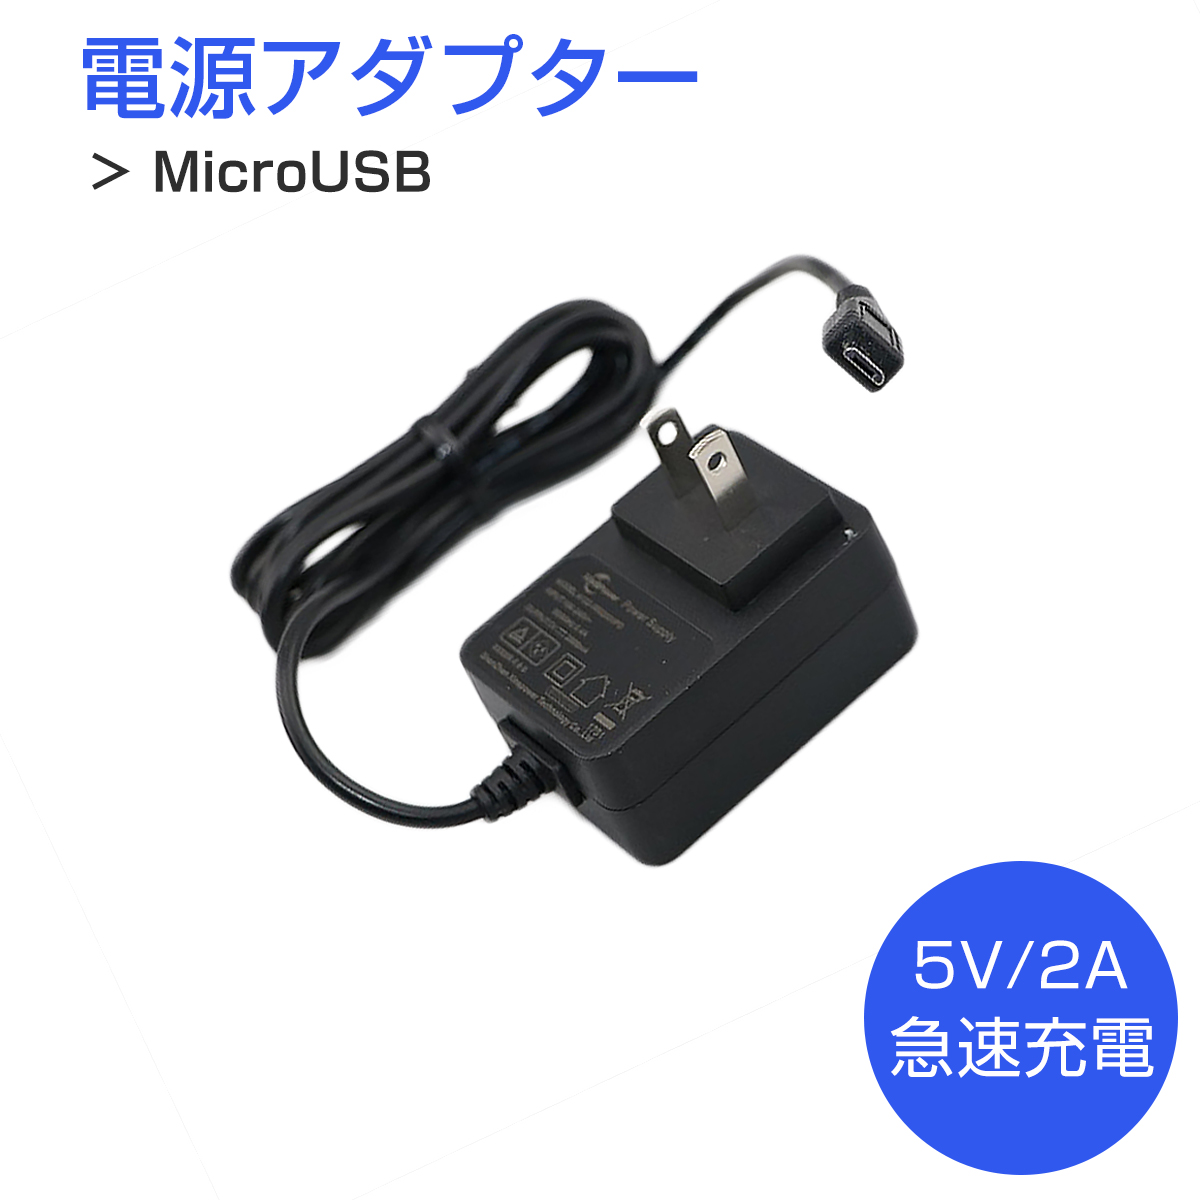 MicroUSB AC電源アダプター 5V 2A 対応 宅配便送料無料 1ヶ月保証